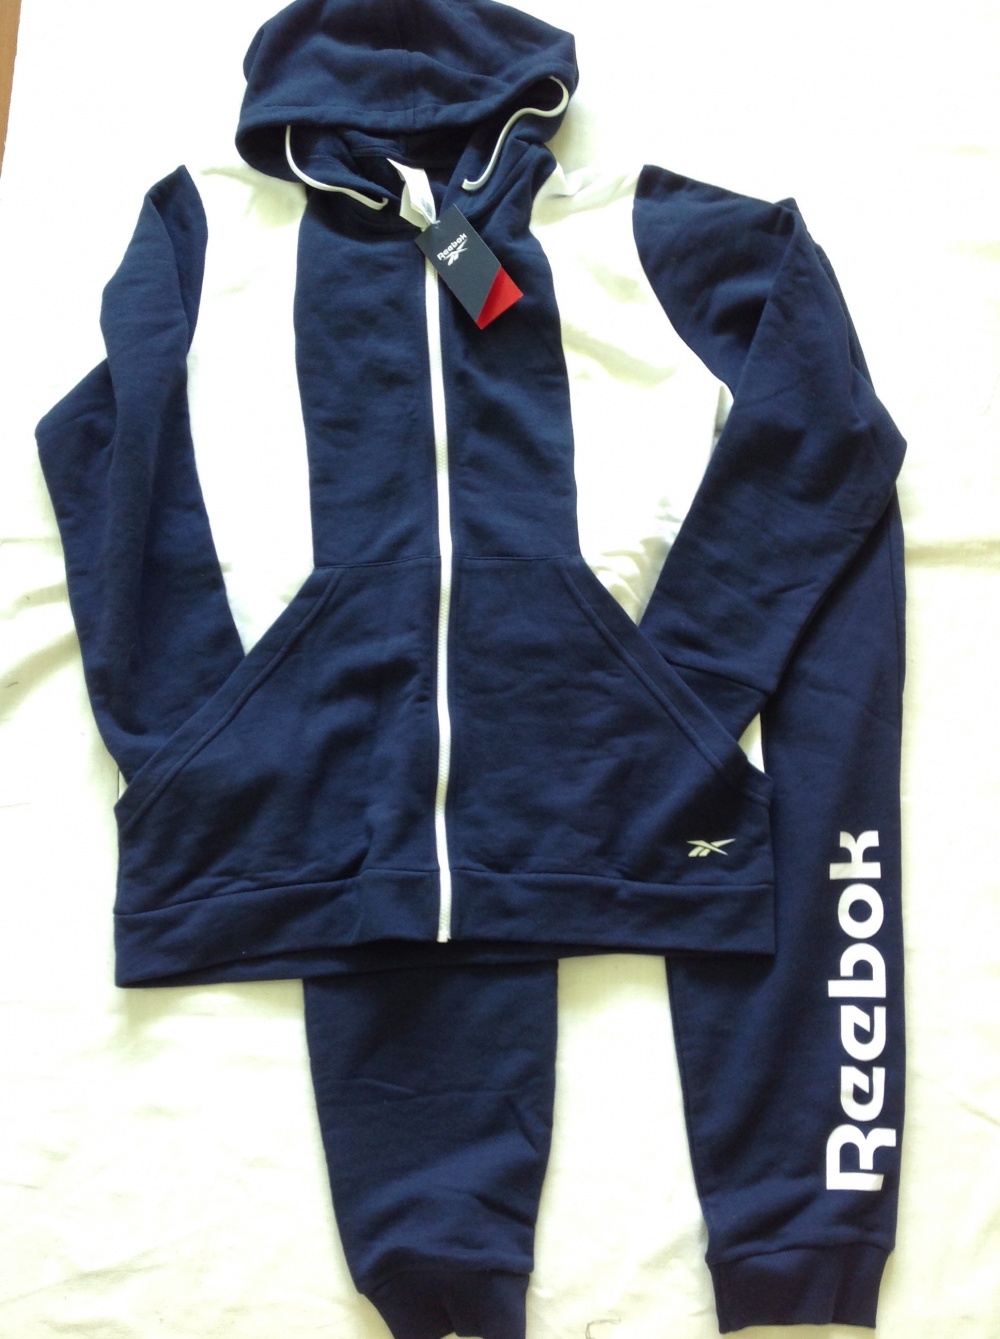 Спортивный костюм Reebok, размер XL, на 52-54-56